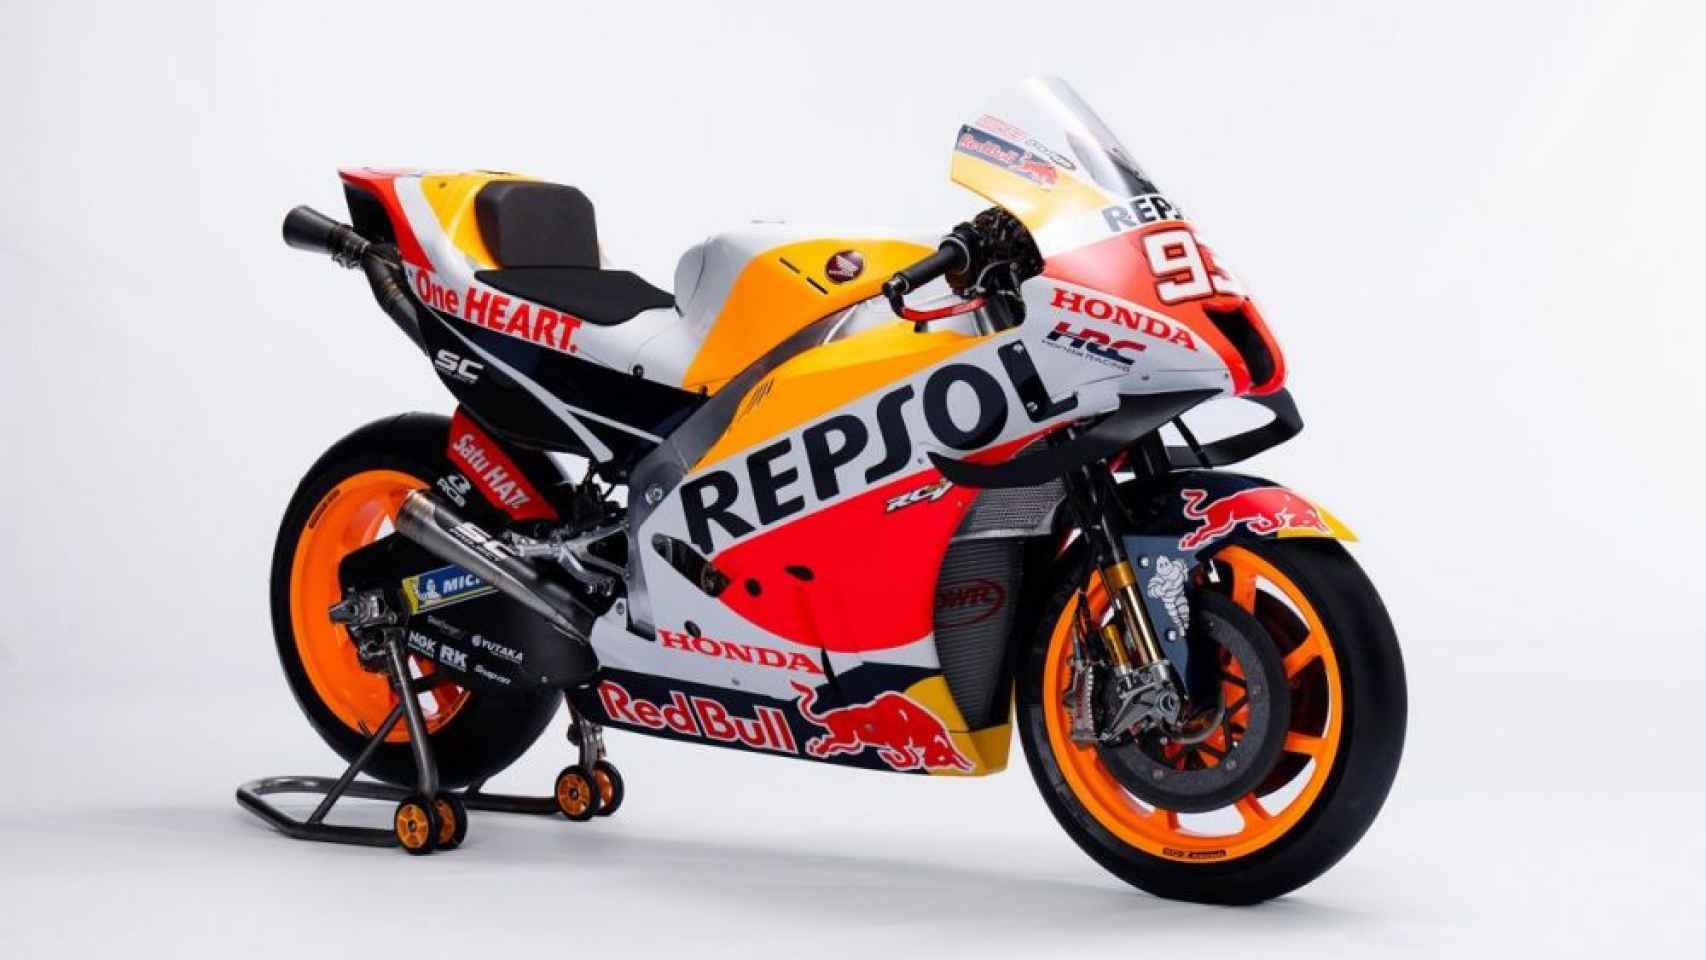 La RC213V de Honda que conducirá Marc Márquez en el Mundial de MotoGP 2022.